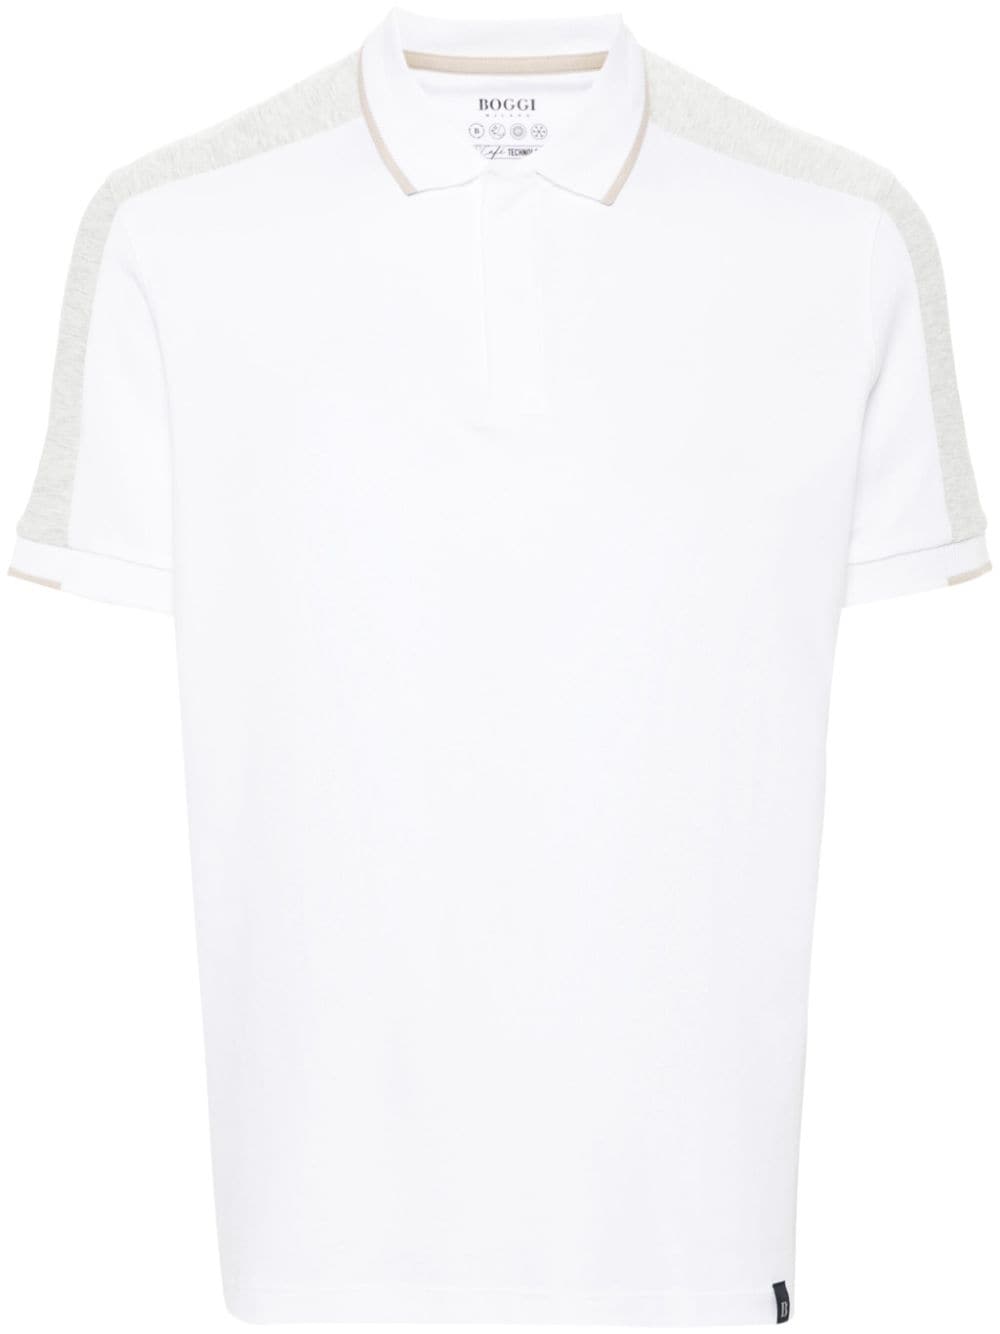 Boggi Milano Poloshirt mit Kontrasteinsätzen - Weiß